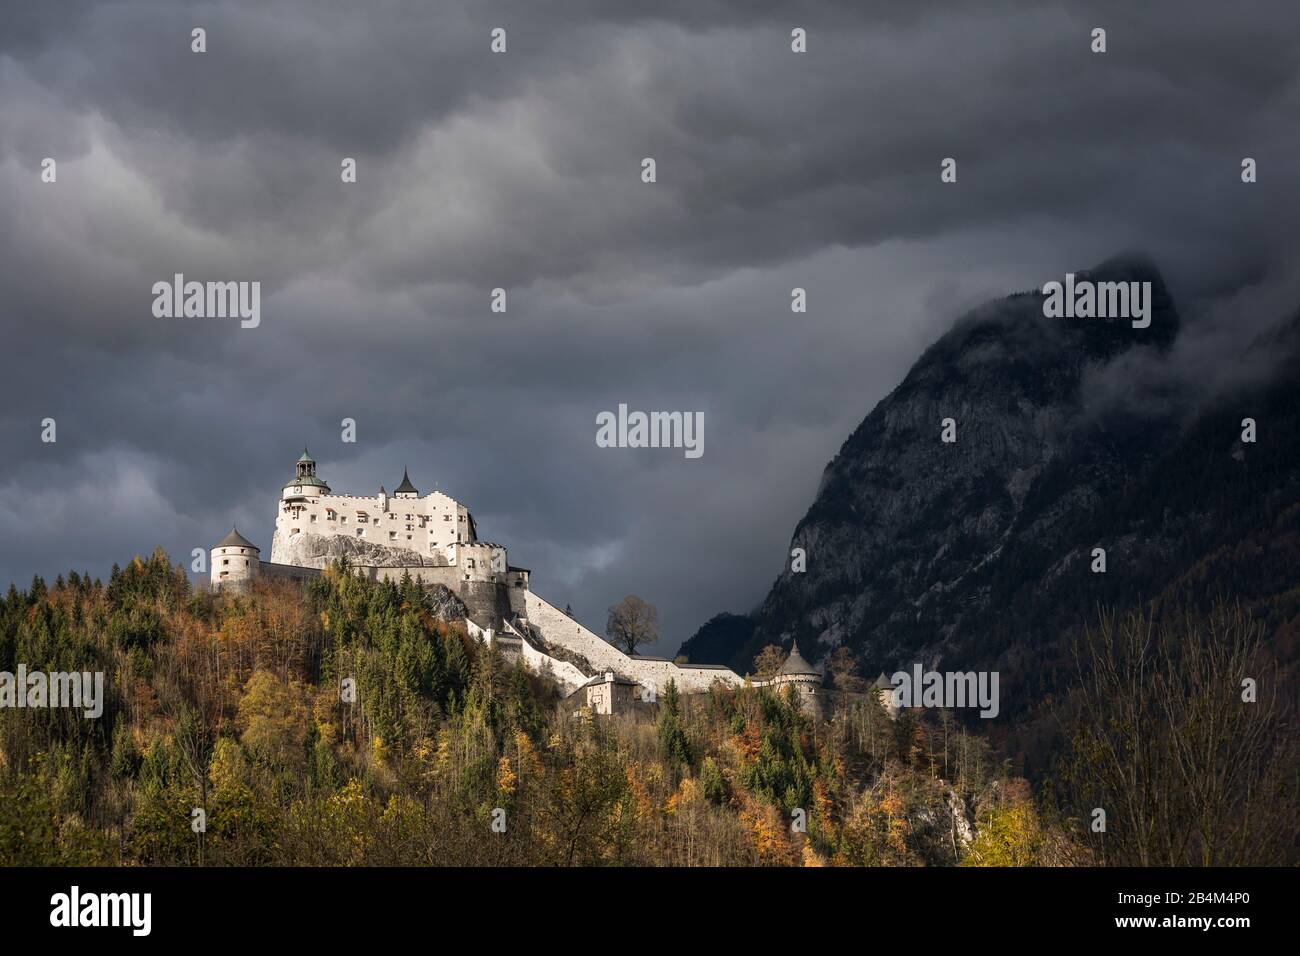 Die Festung Hohenwerfen im Salzachtal, werfen, Pongau, Land Salzburg, Österreich, Oktober 2019 Stockfoto